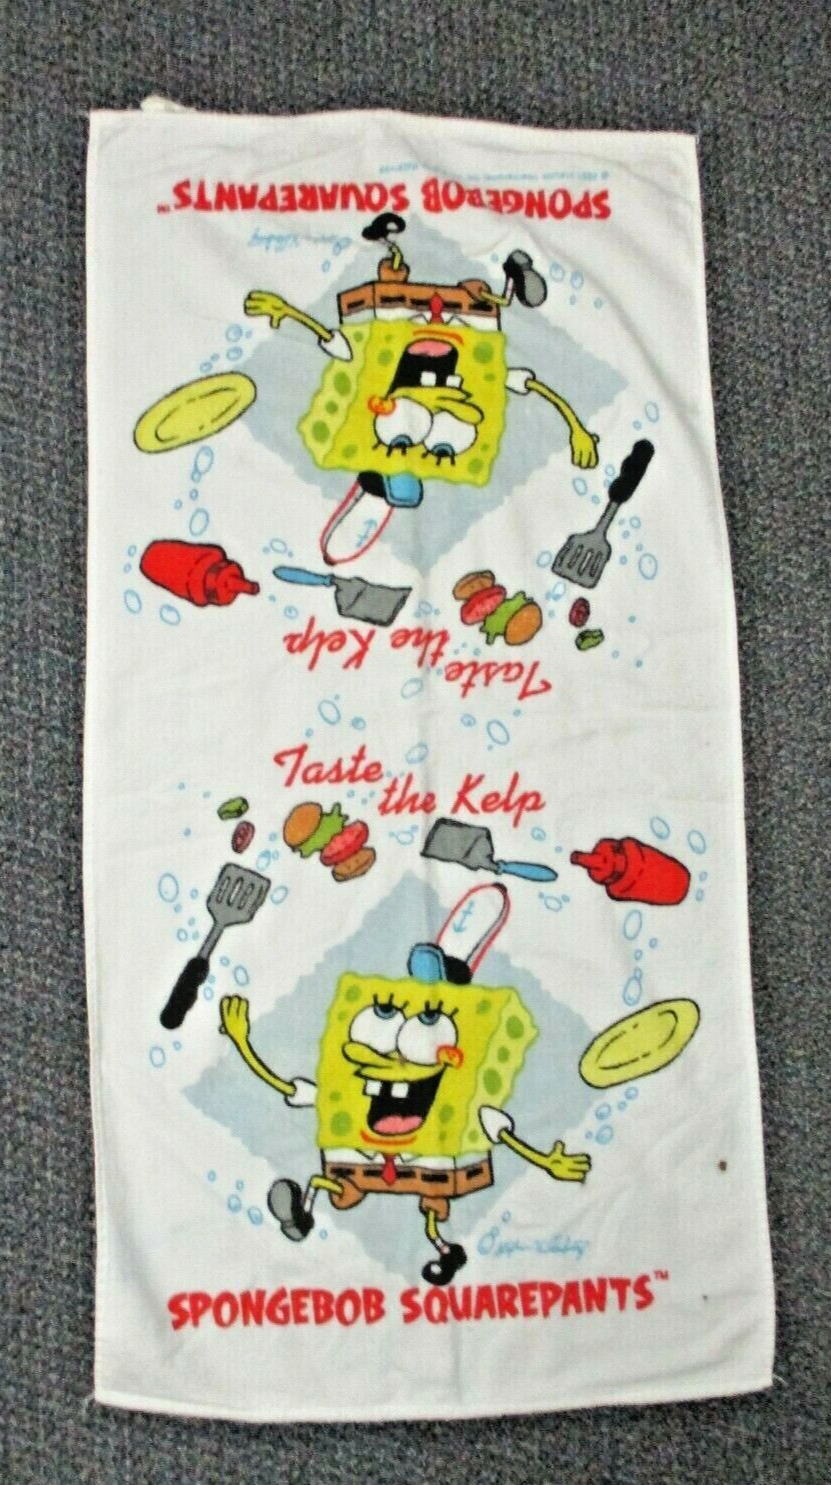 SpongeBob SquarePants Towel Taste the Kelp - 2001 Cooking Theme 40x20.5 Towel